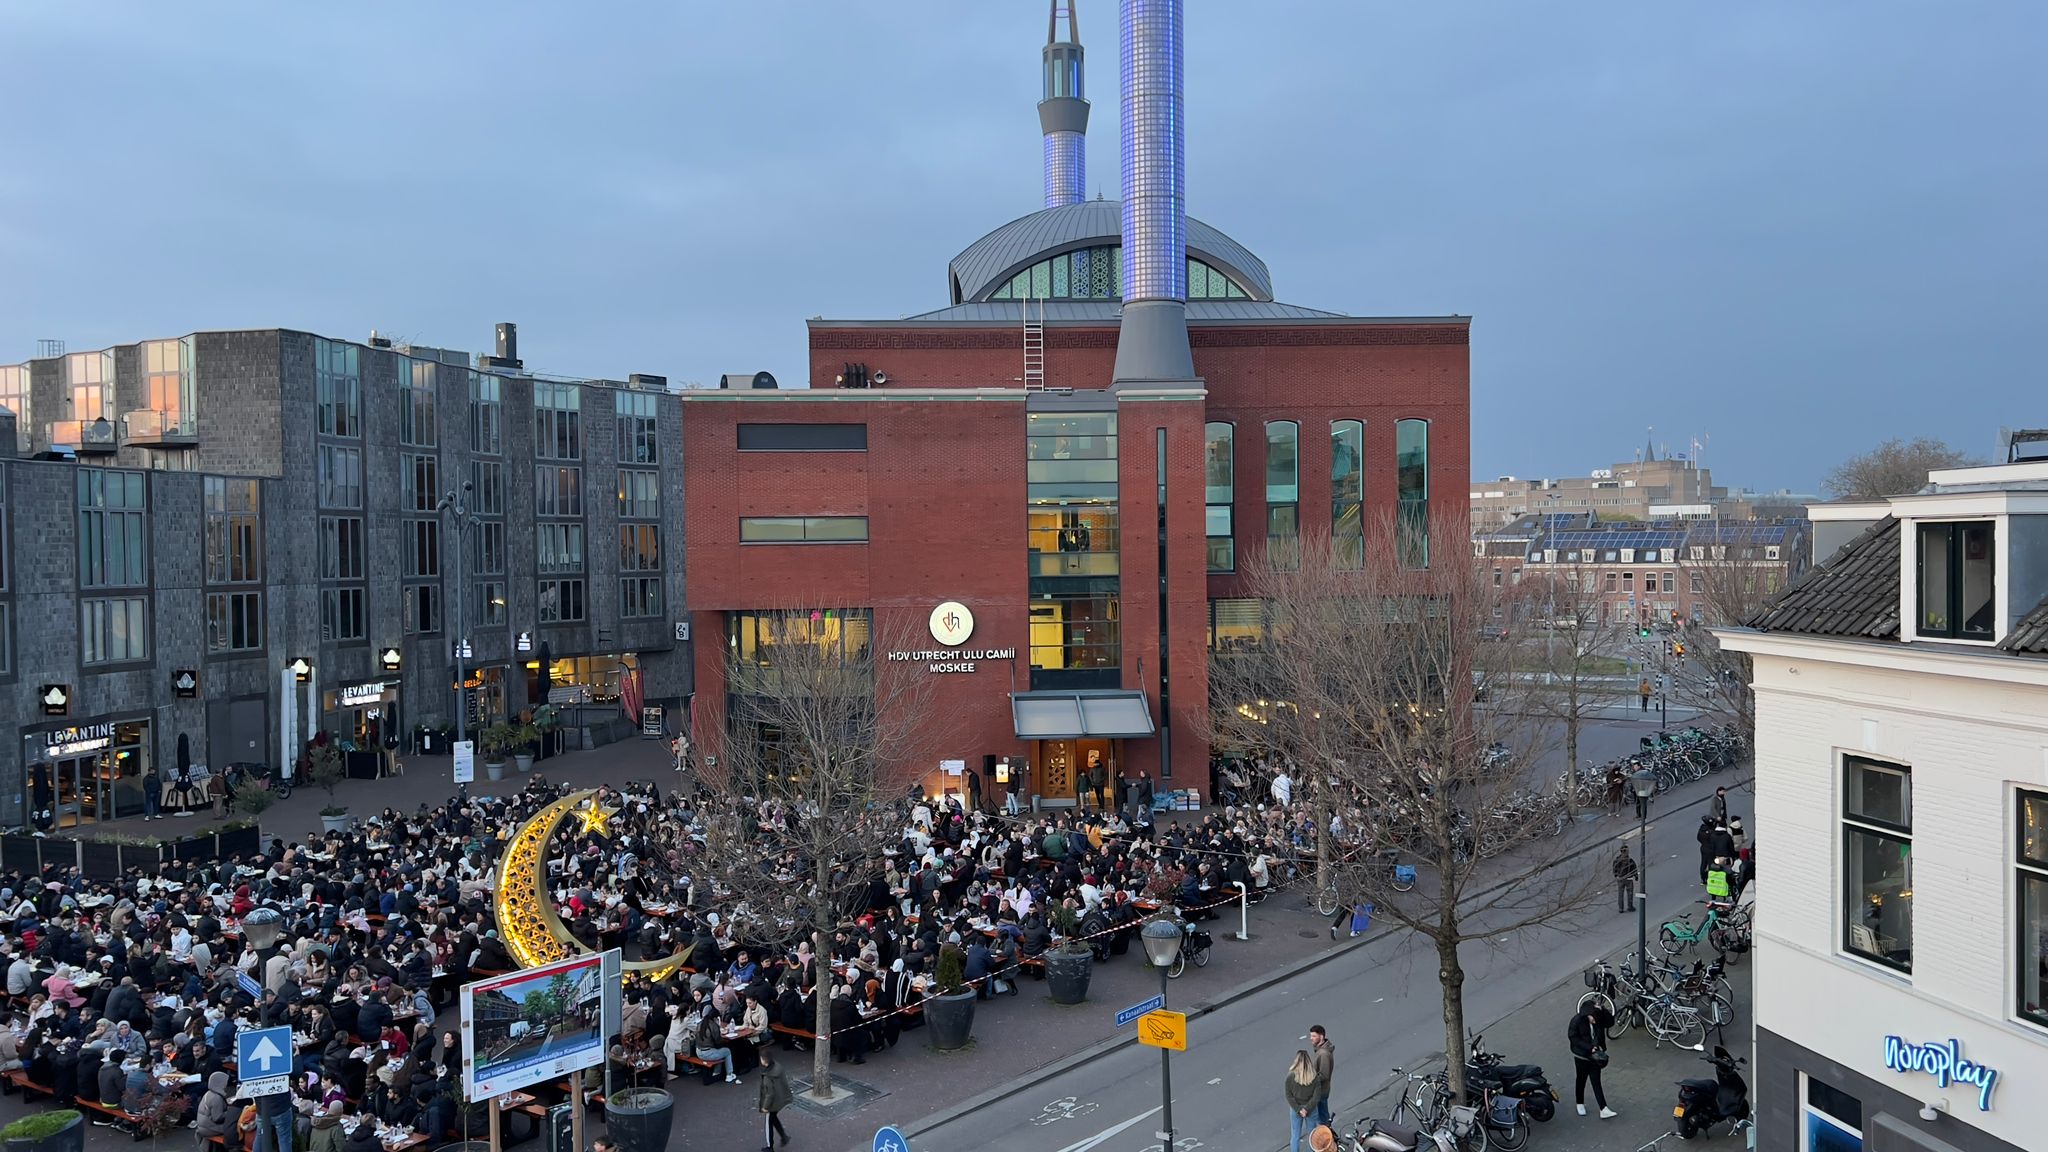 Hollanda'da 1500 kişilik sokak iftarı düzenlendi